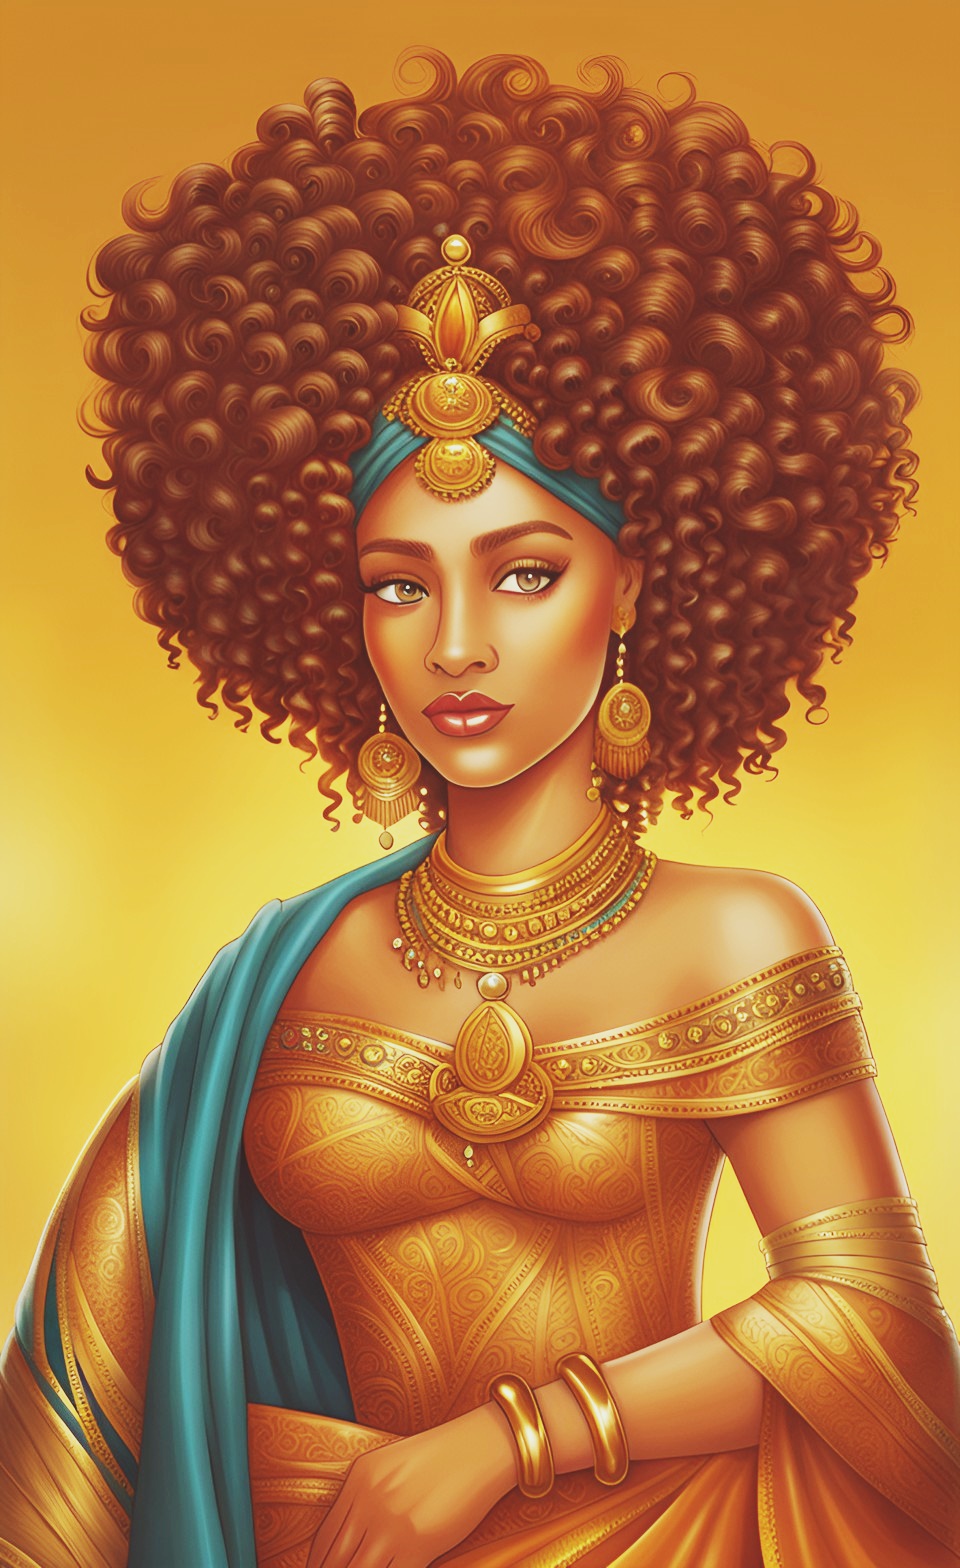 Mixed-race Queen of SHEBA art work Mixed421